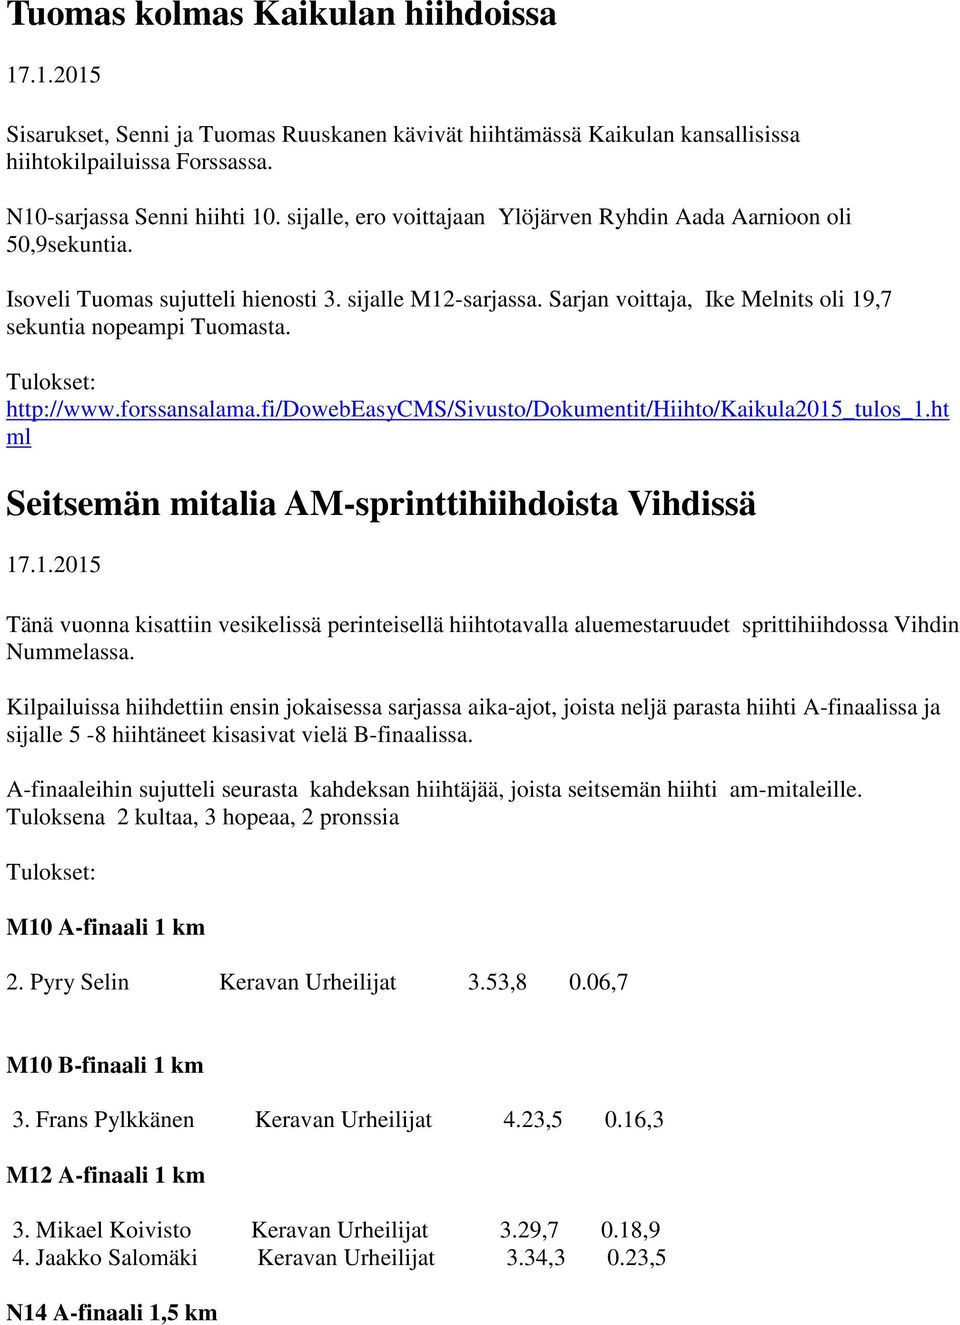 Tulokset: http://www.forssansalama.fi/dowebeasycms/sivusto/dokumentit/hiihto/kaikula2015